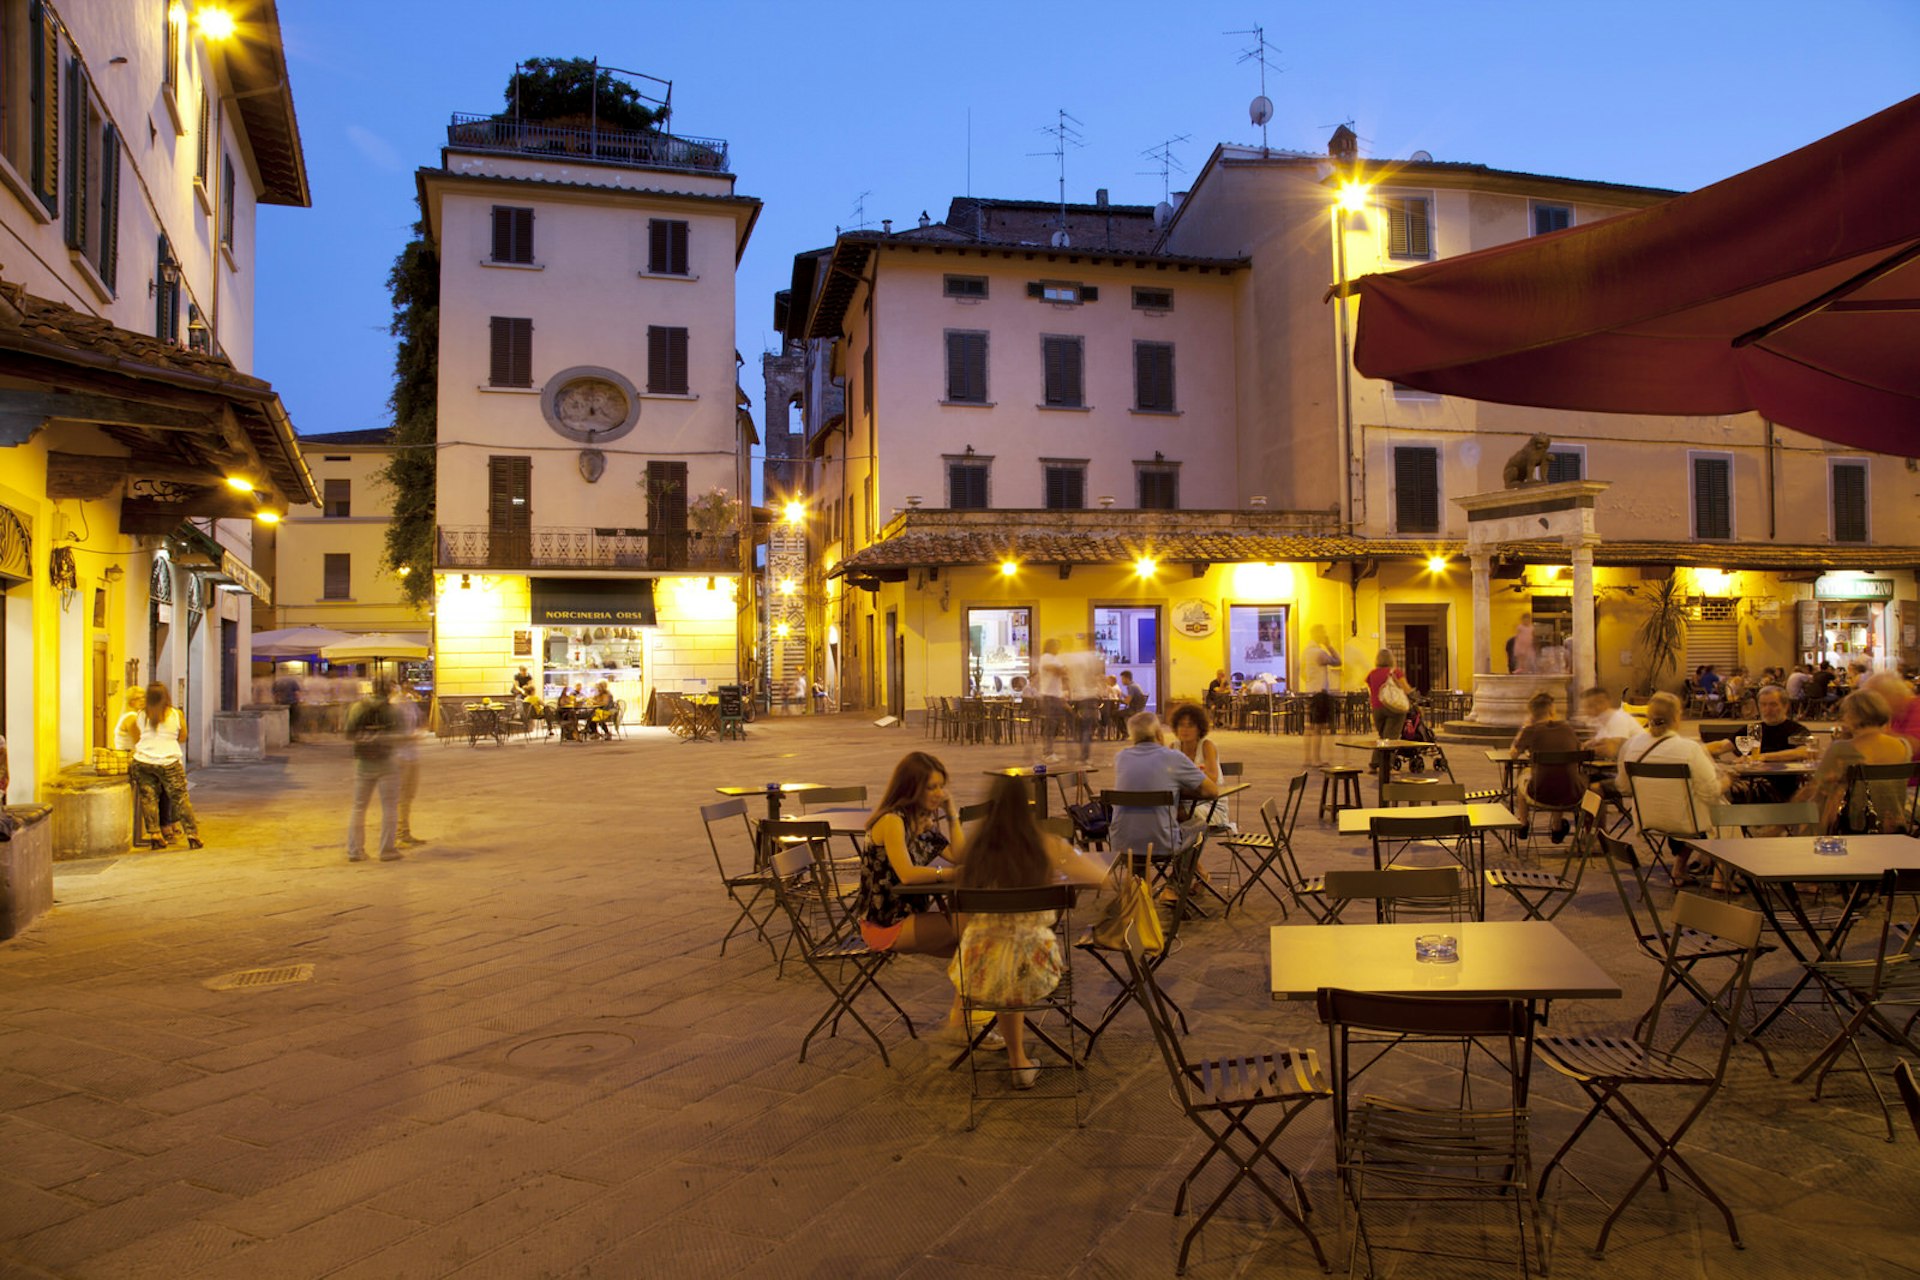 The Piazza della Sala comes into its own at night